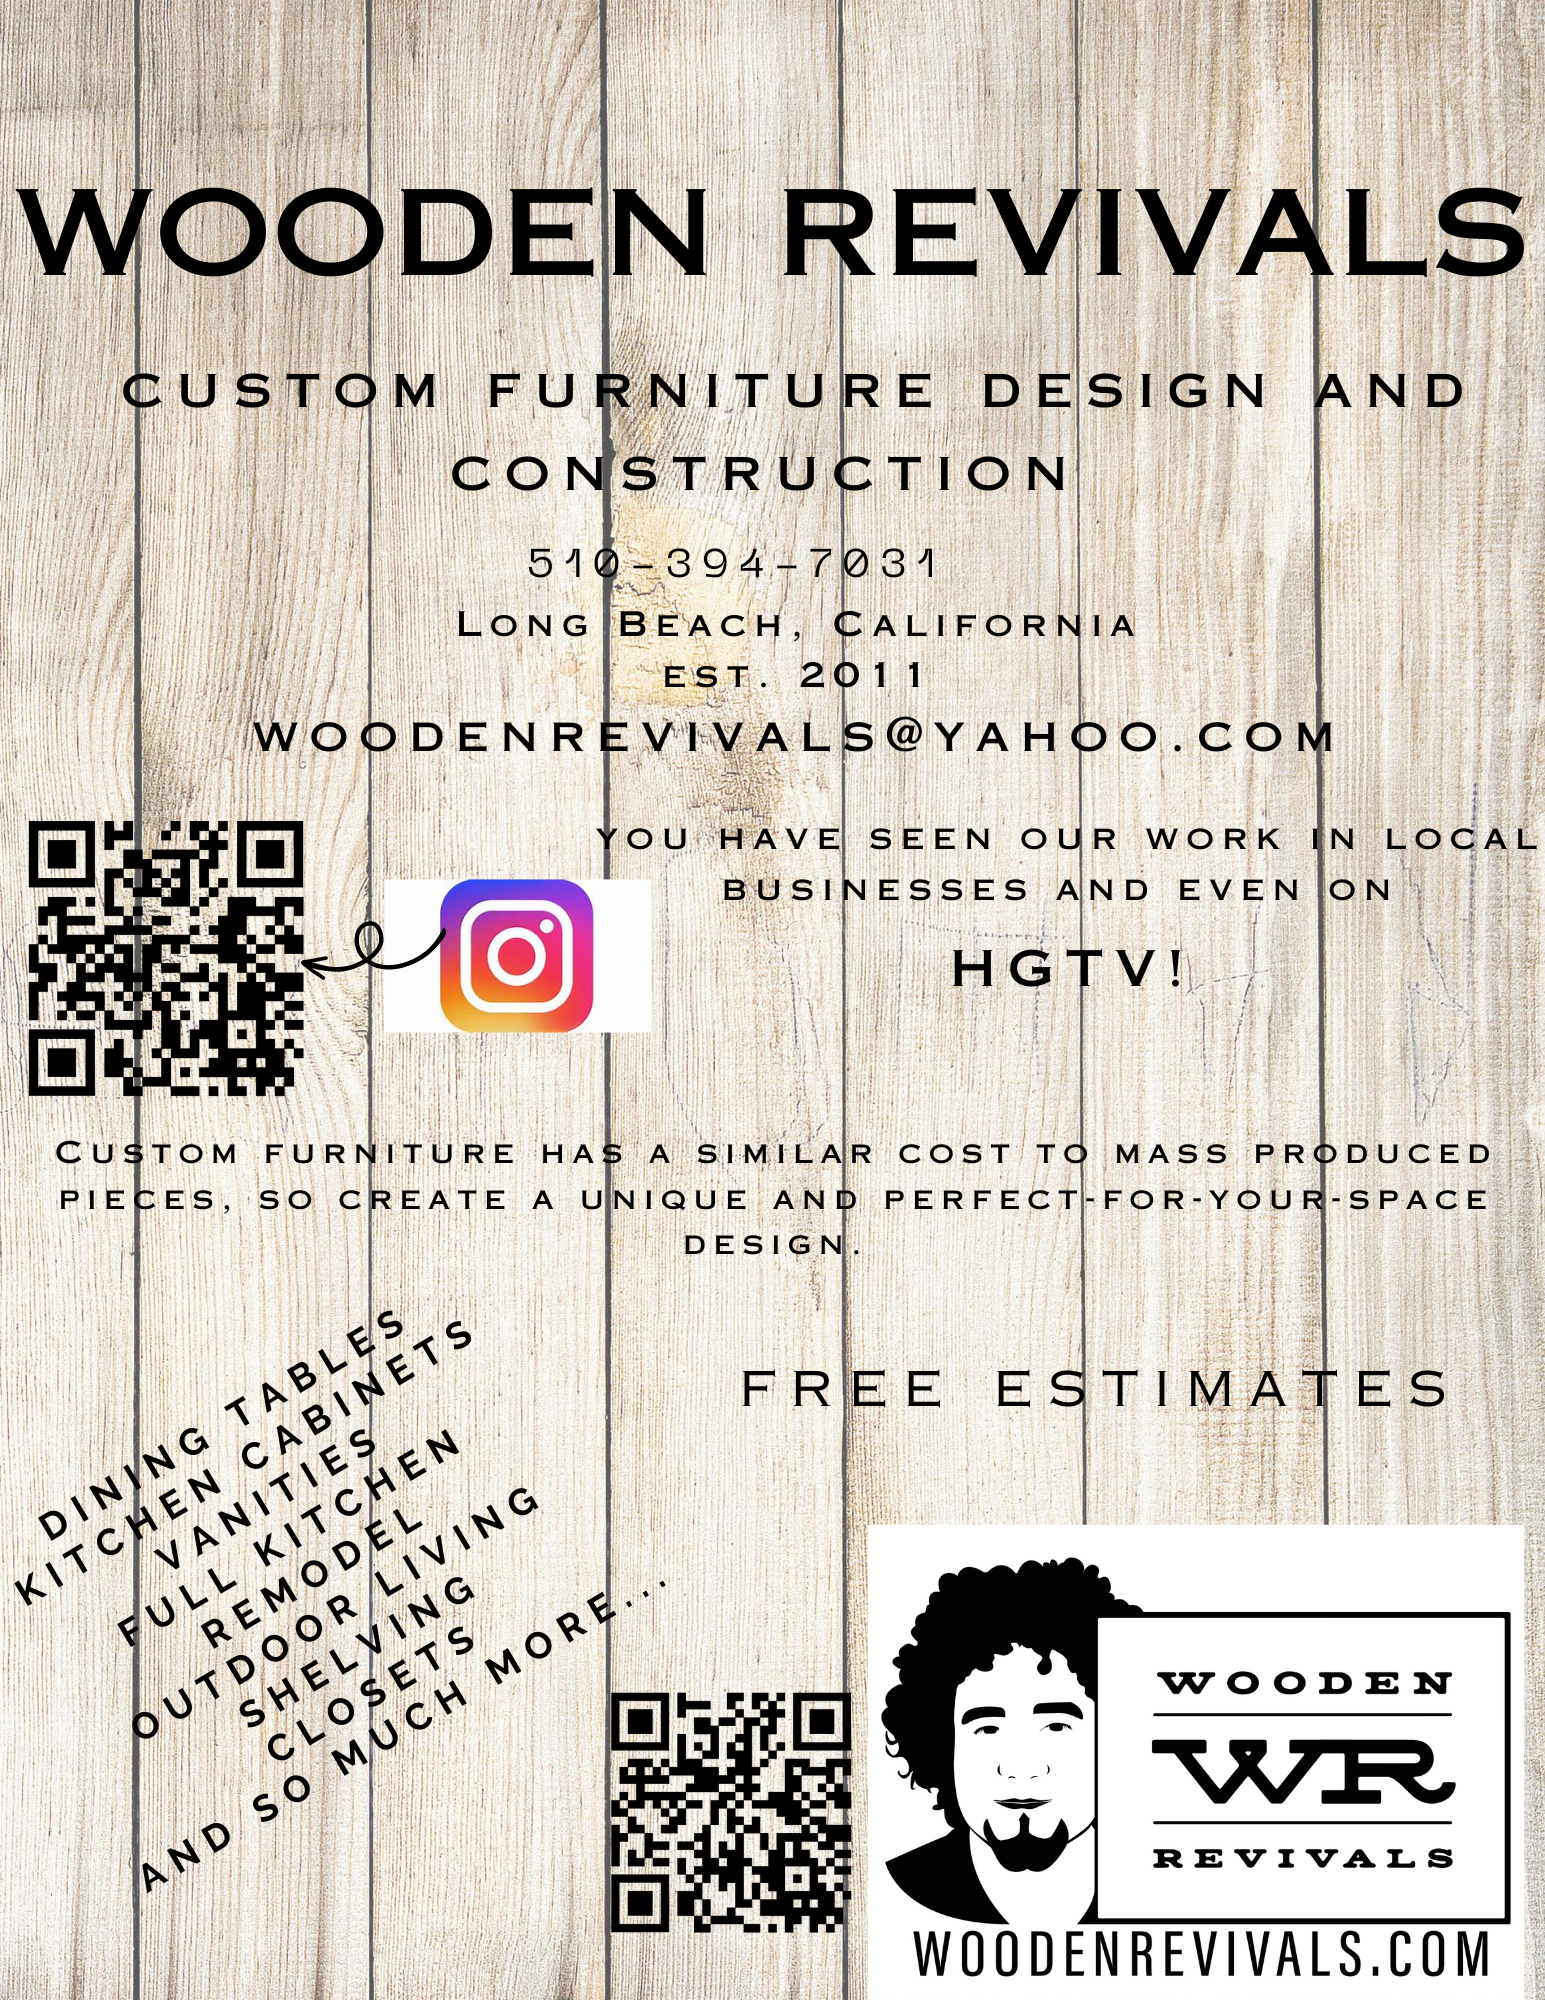 wooden revivals ad - Ellie Christov (1).png